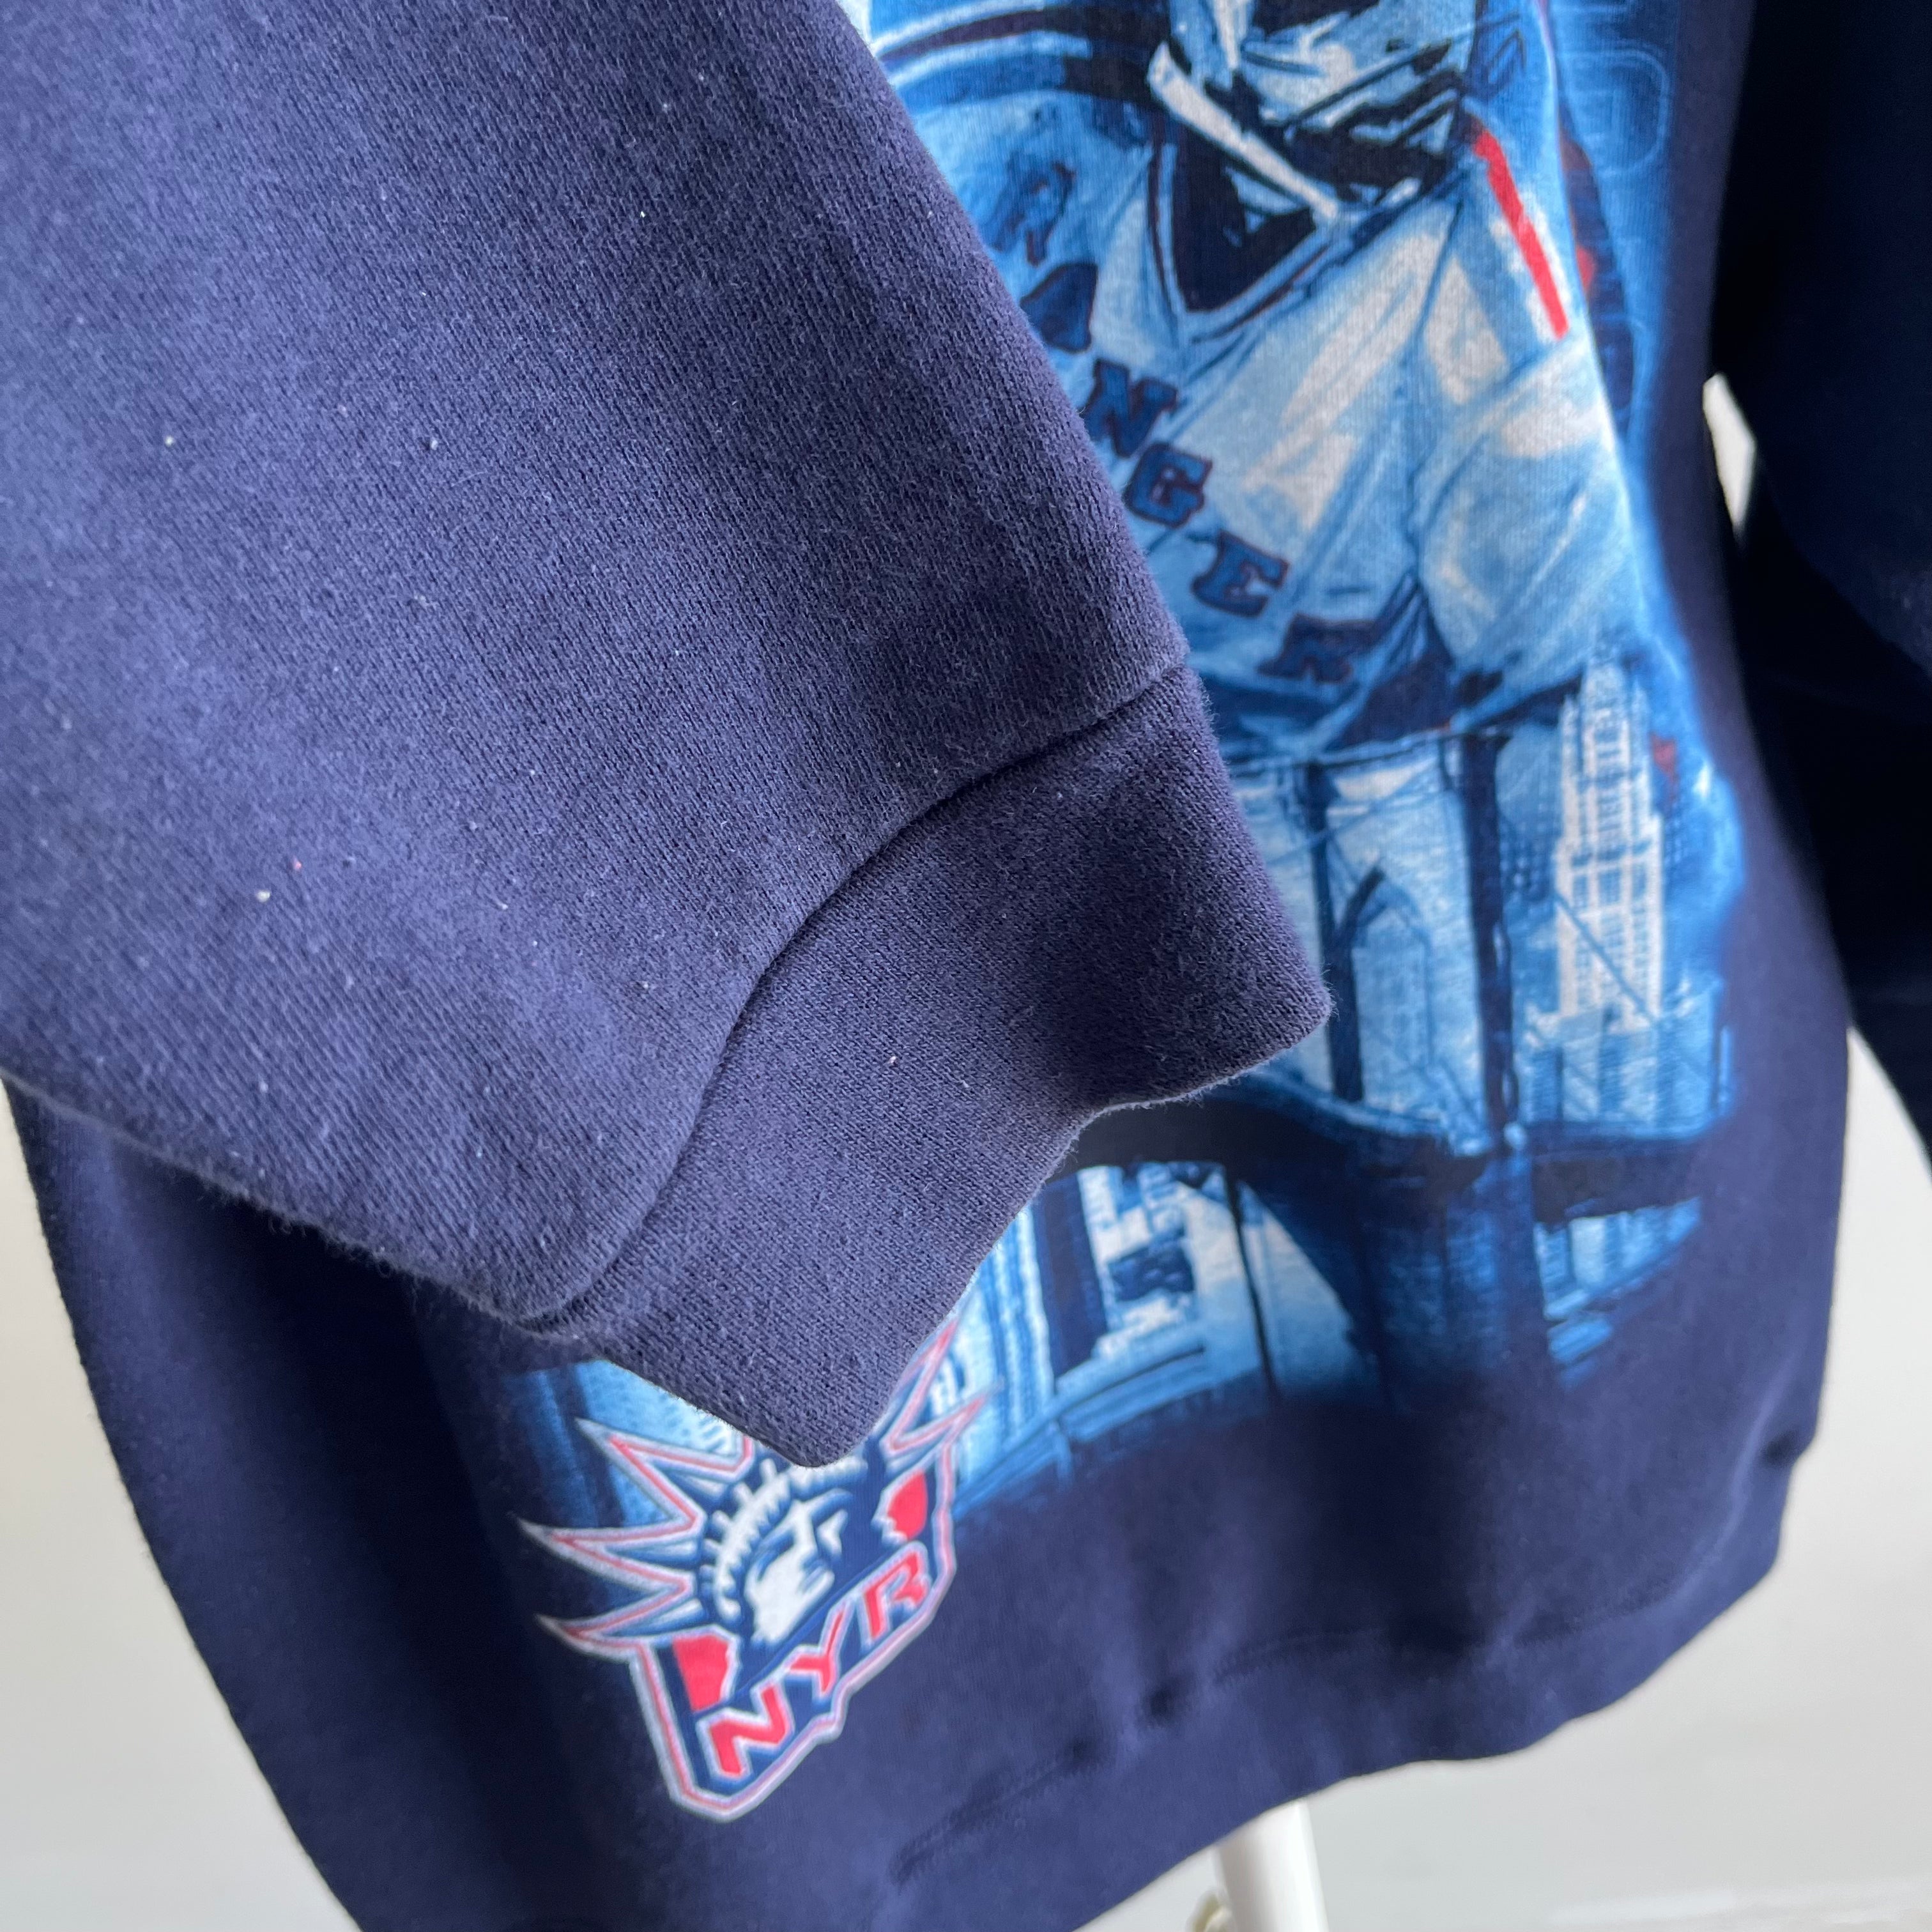 1990s/2000s New York Rangers NHL Sweatshirt